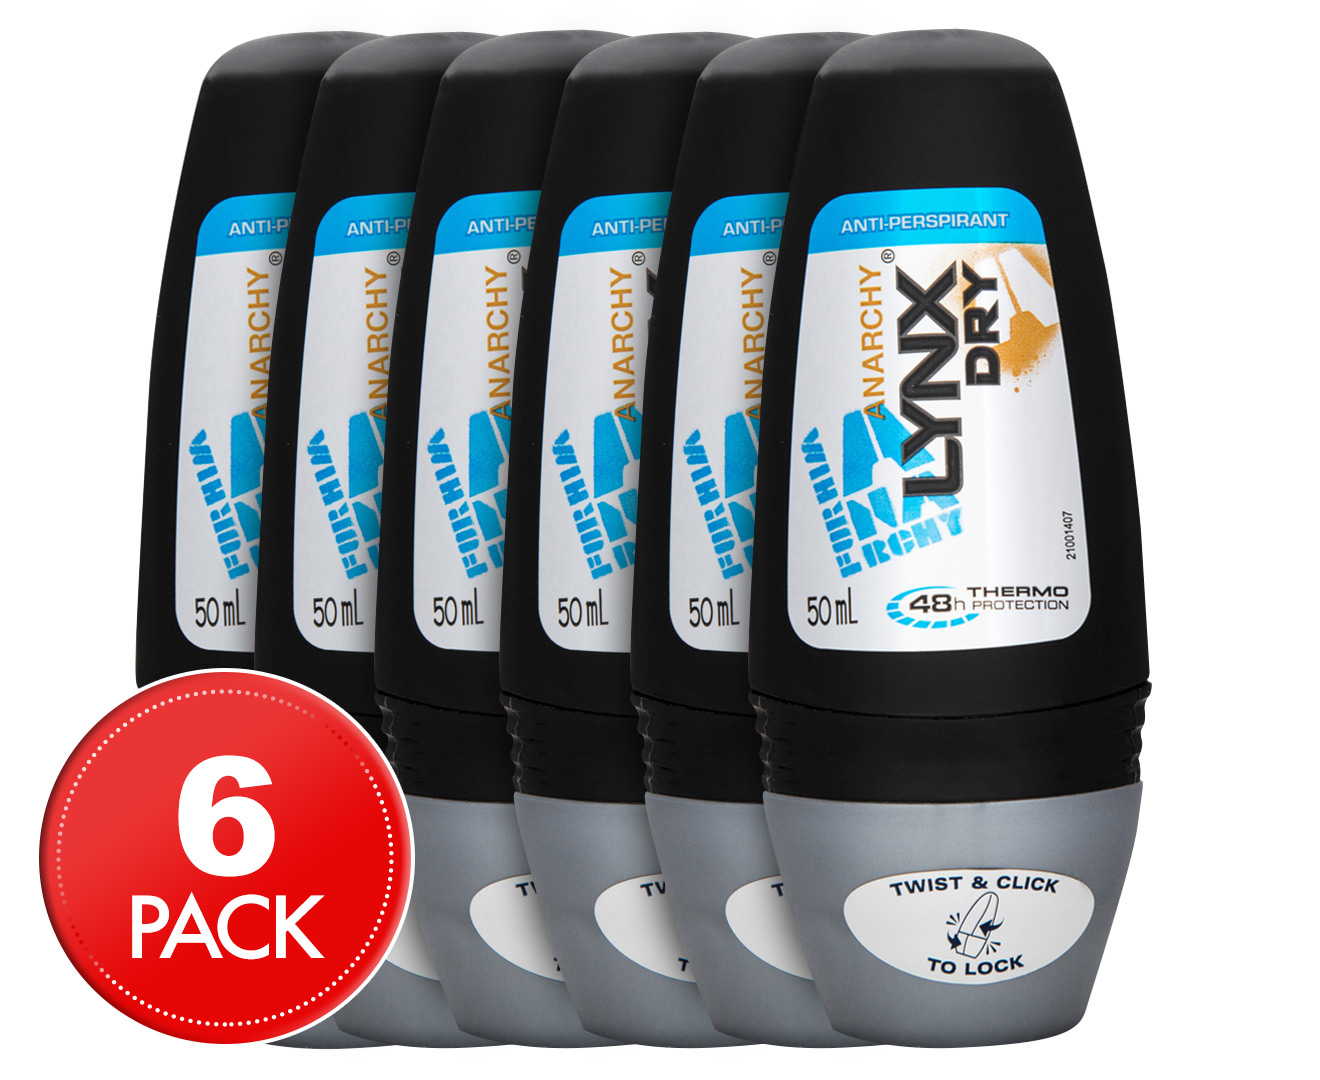 6 x LYNX Dry Anarchy Roll On Anti-Perspirant Deodorant 50mL